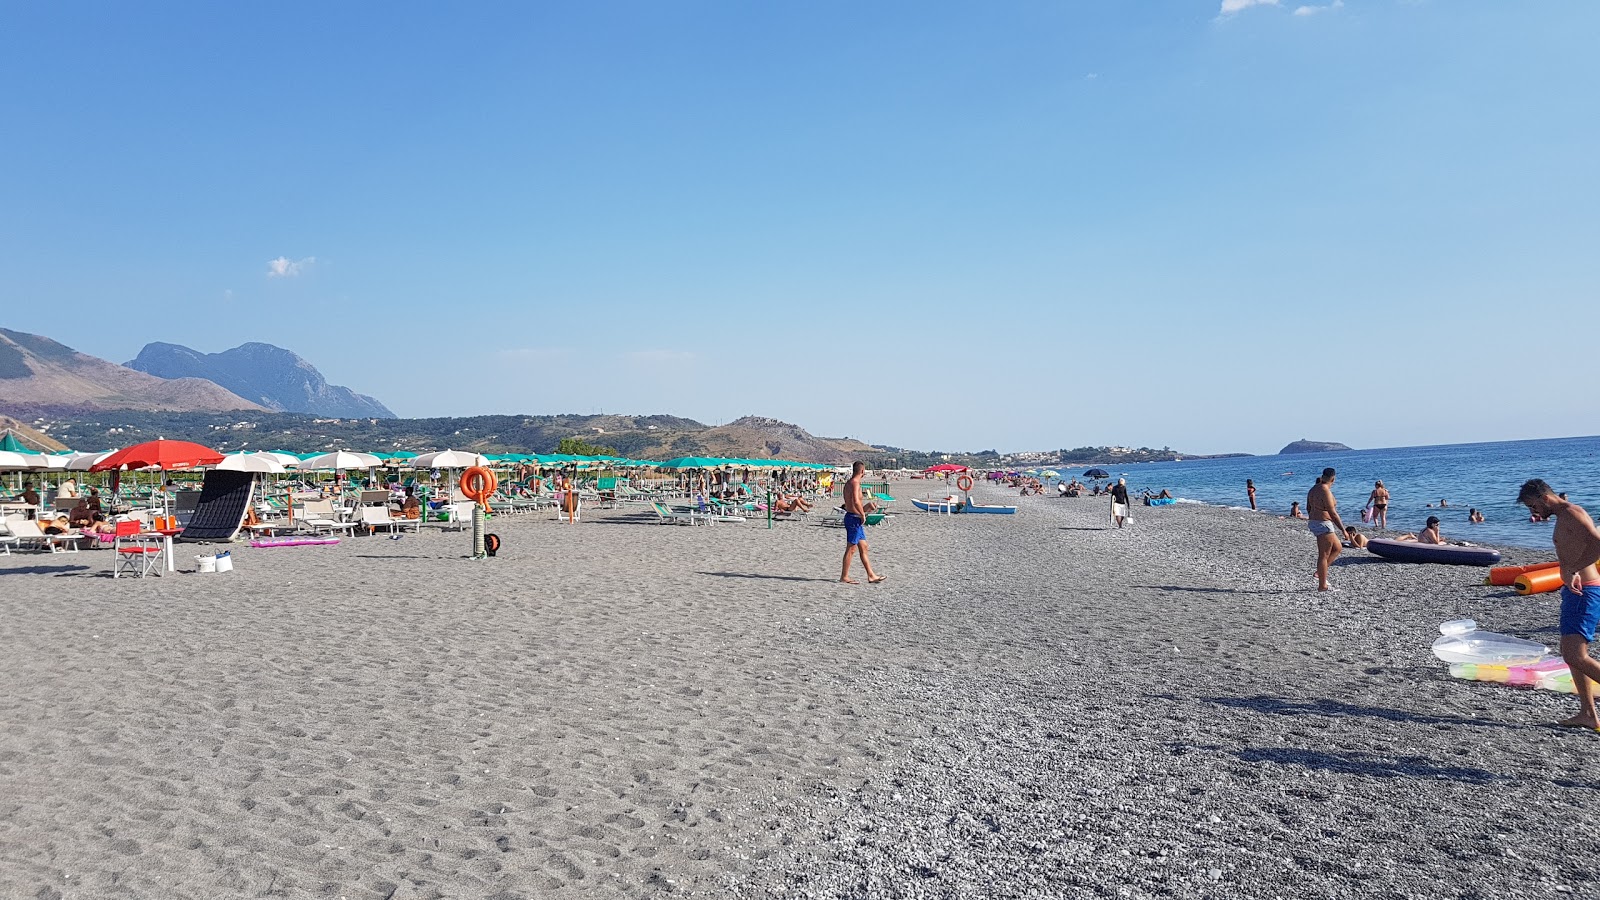 Acchio-Fiumicello beach'in fotoğrafı gri kum yüzey ile